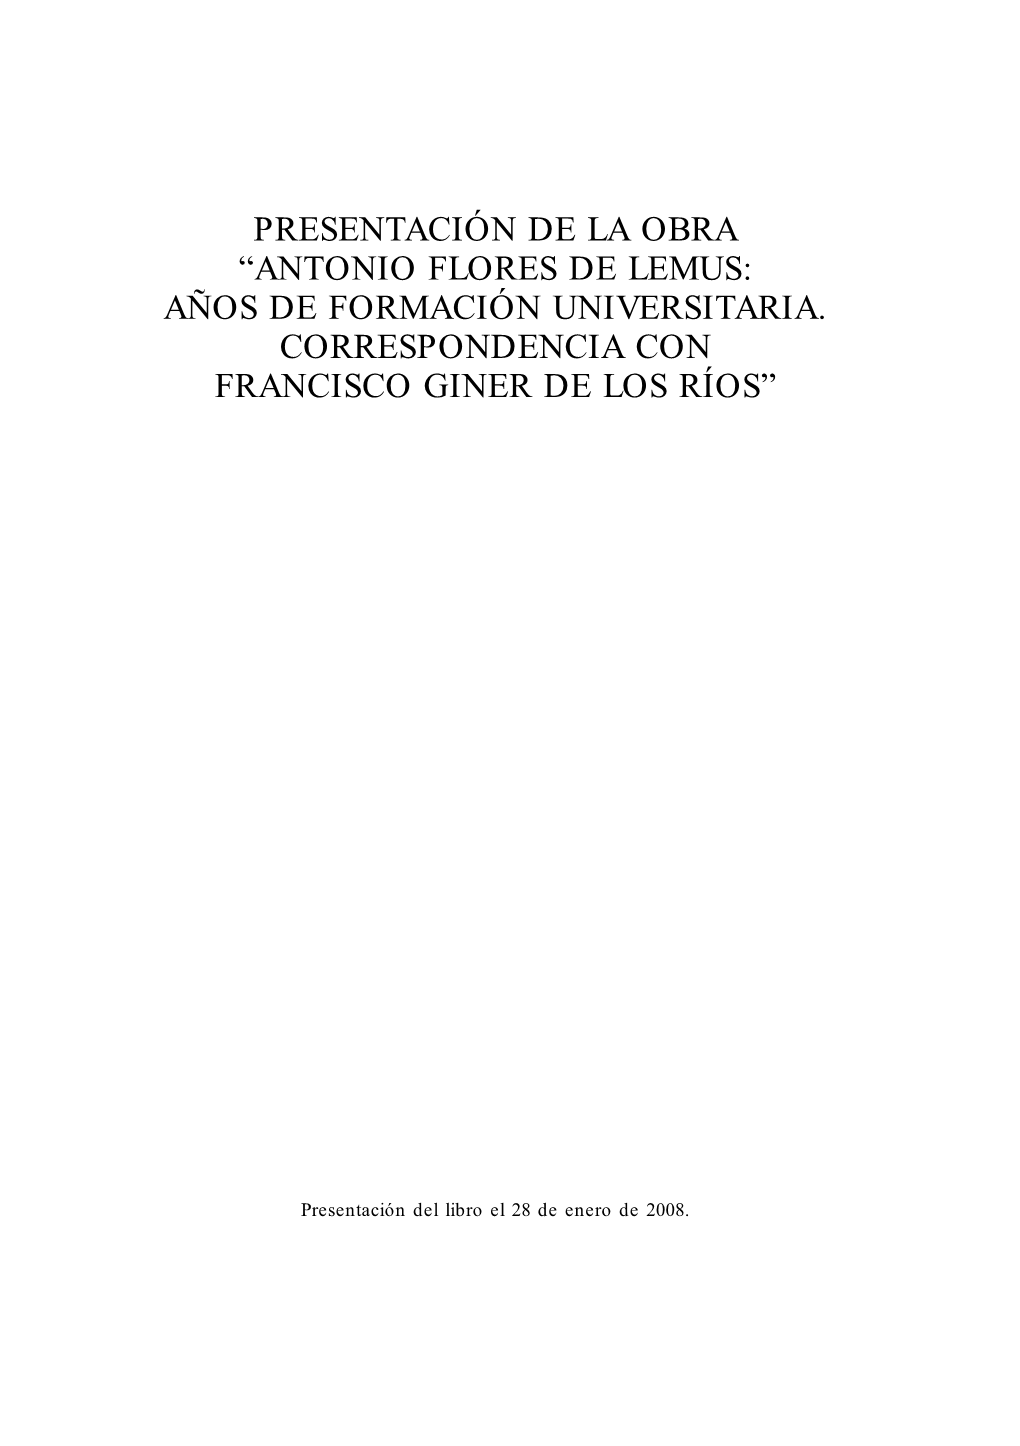 Antonio Flores De Lemus: Años De Formación Universitaria